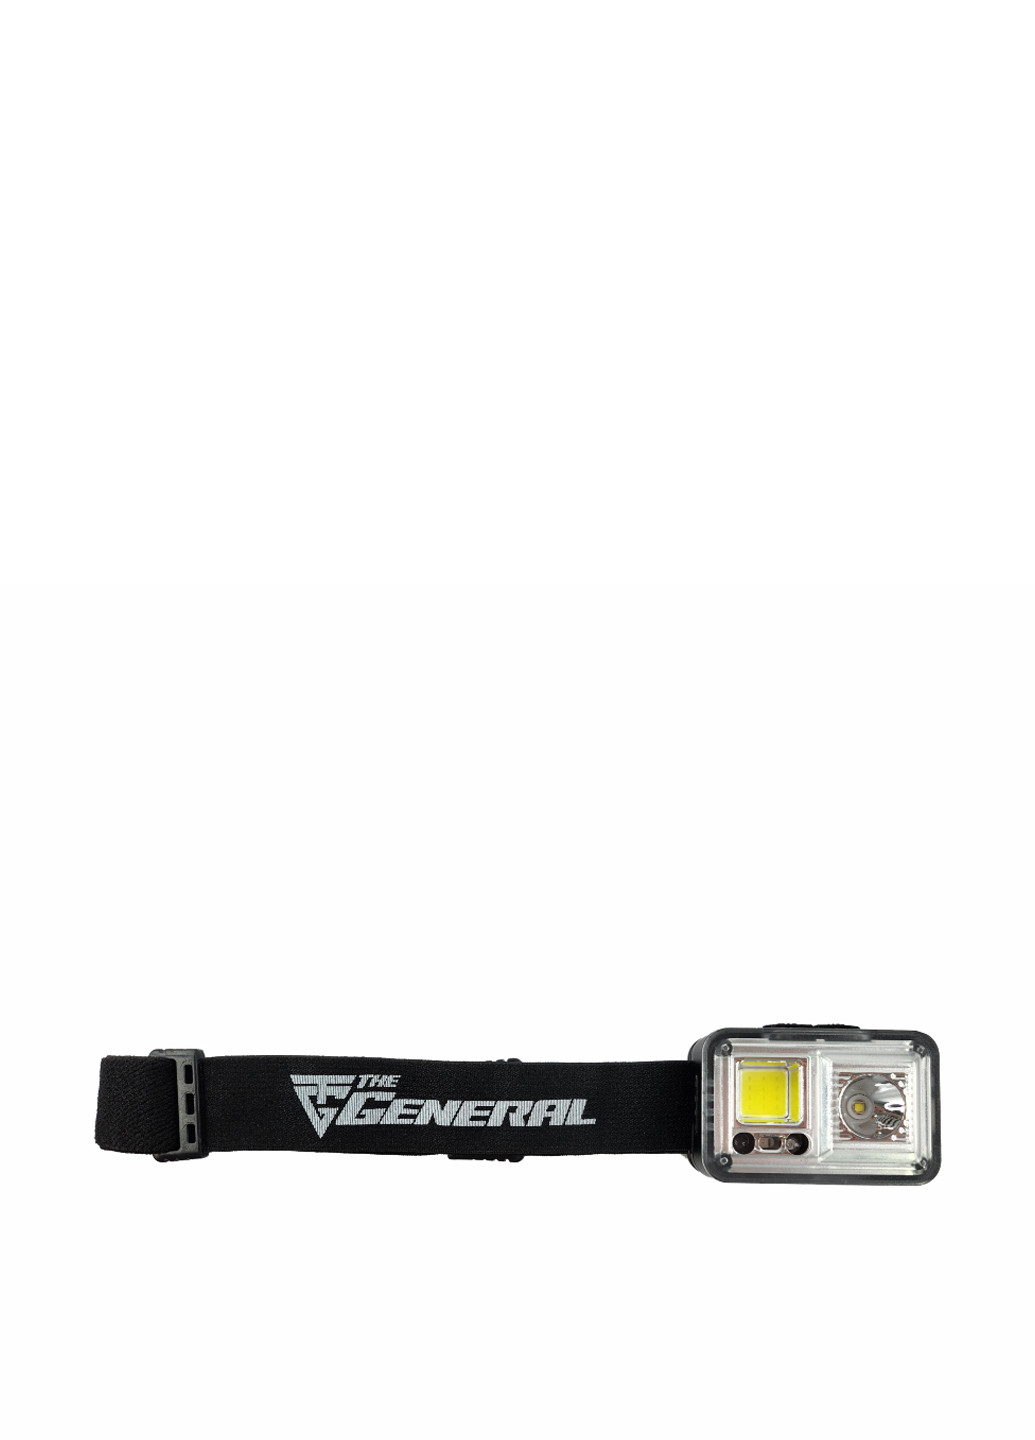 Ліхтарик налобний акумуляторний Gaily 5W TheGeneral (290012031)